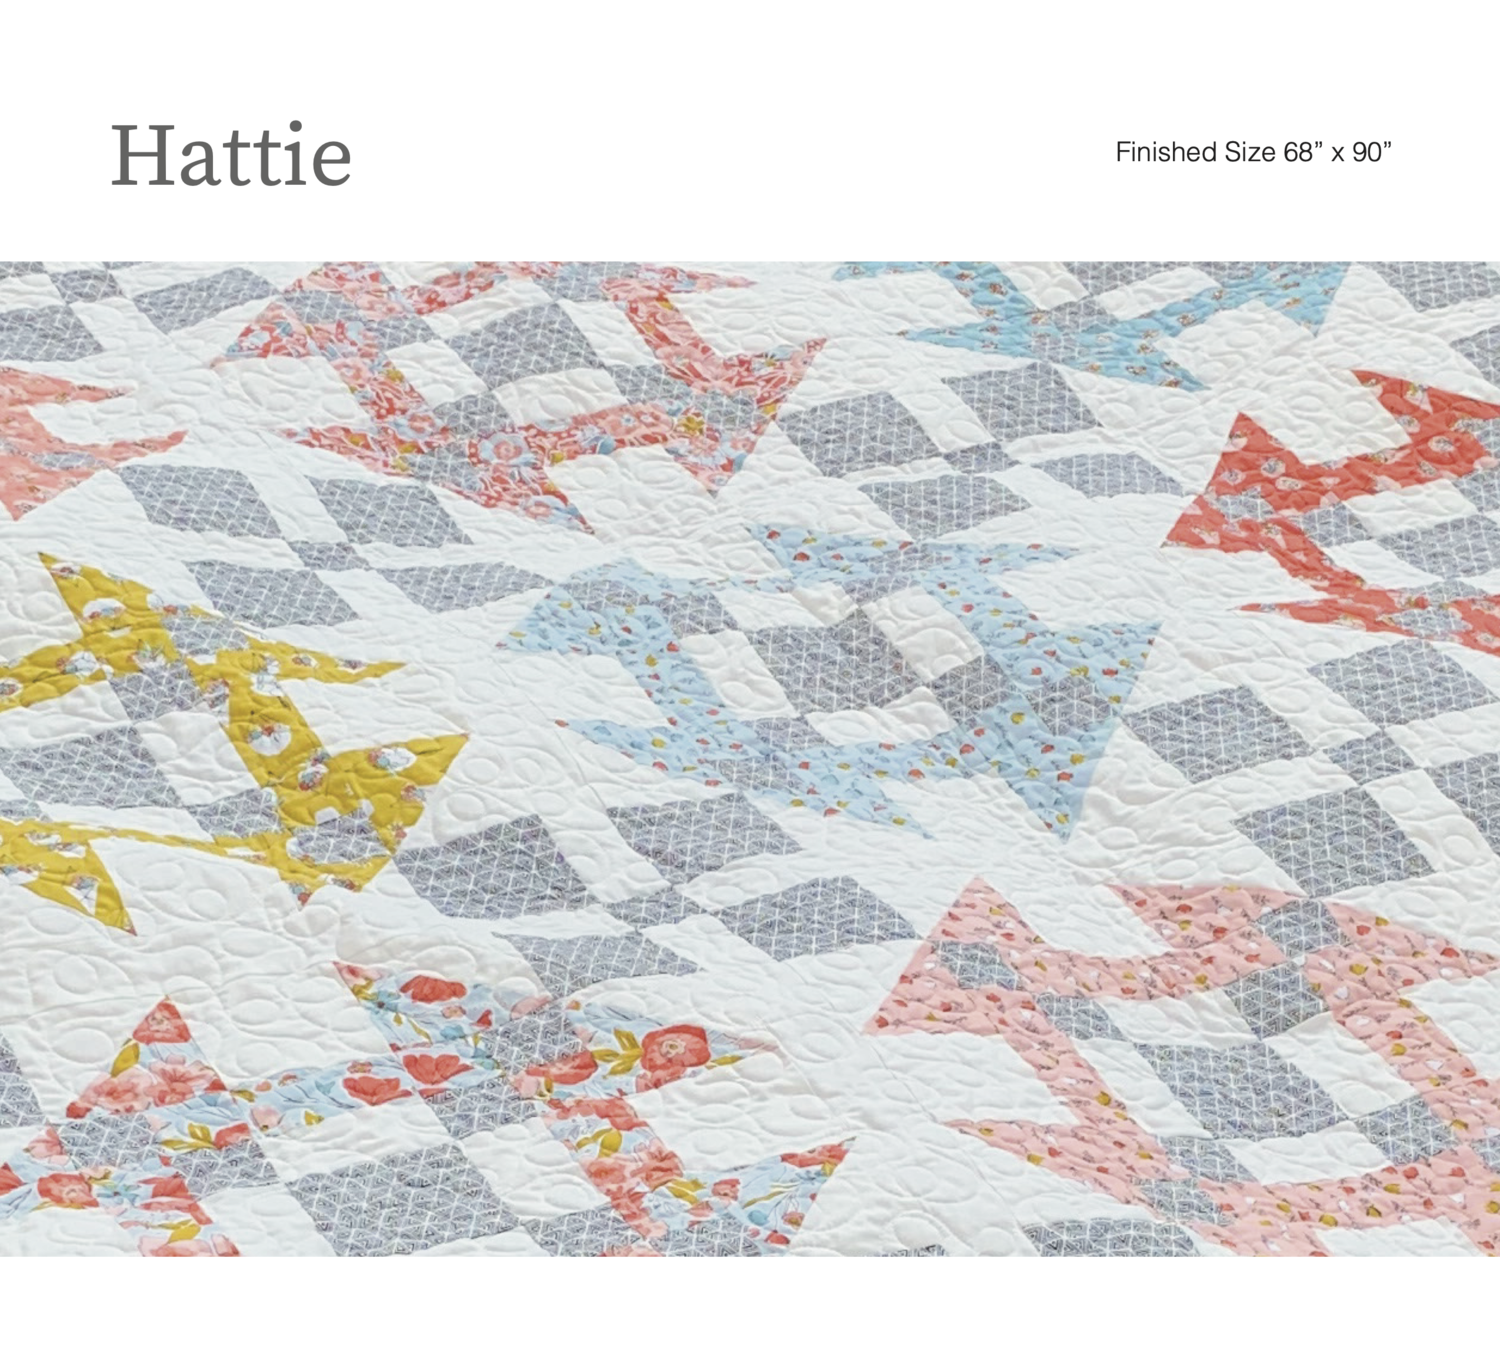 Hattie Quilt Pattern